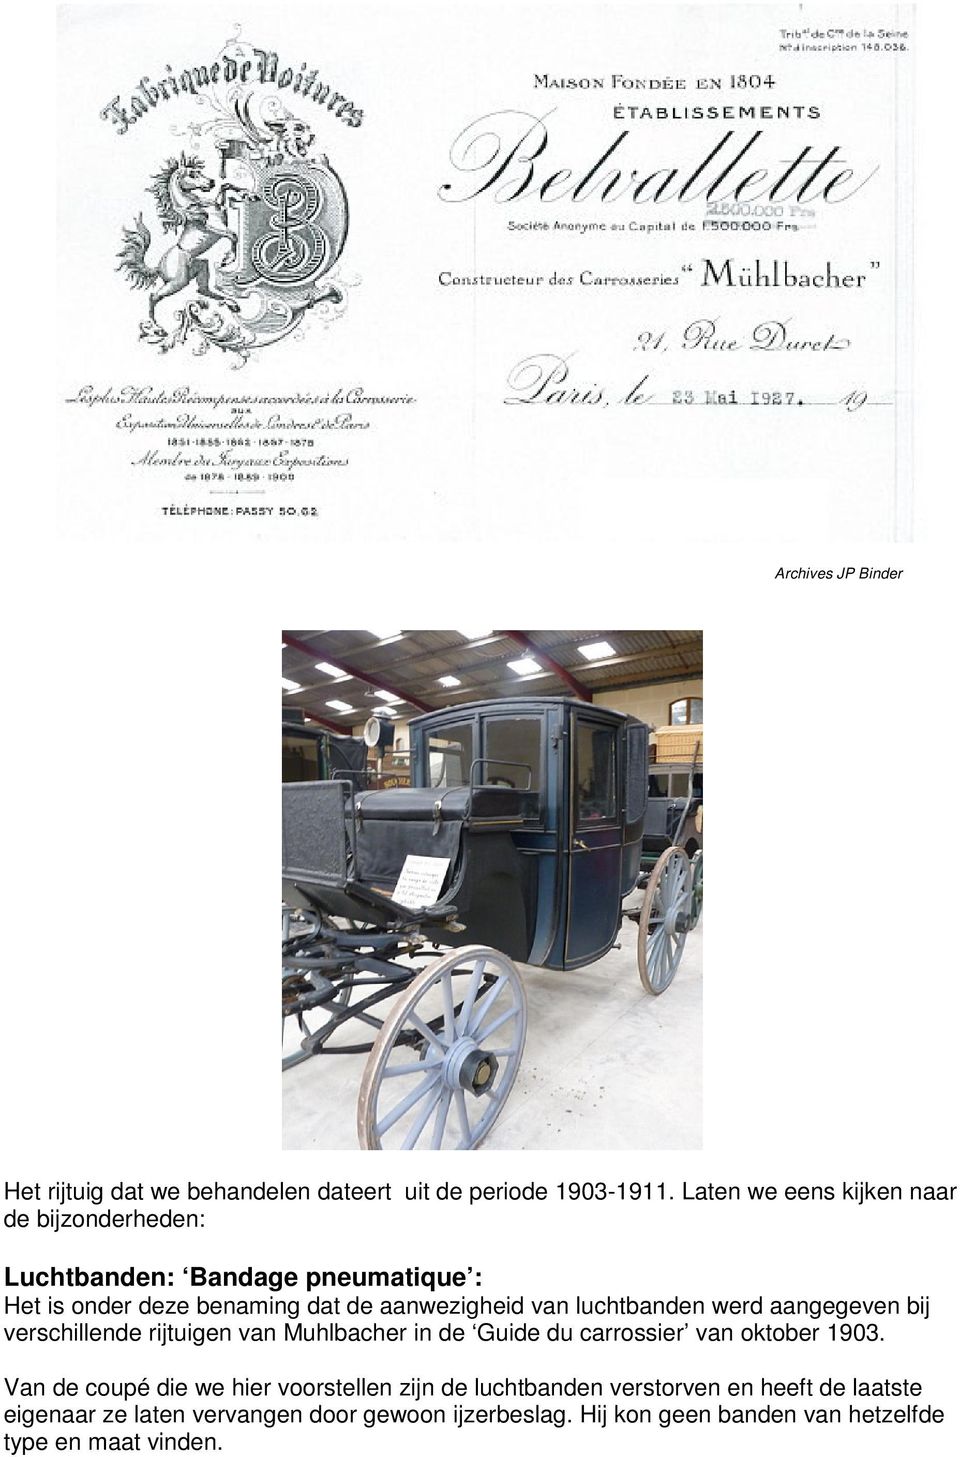 luchtbanden werd aangegeven bij verschillende rijtuigen van Muhlbacher in de Guide du carrossier van oktober 1903.